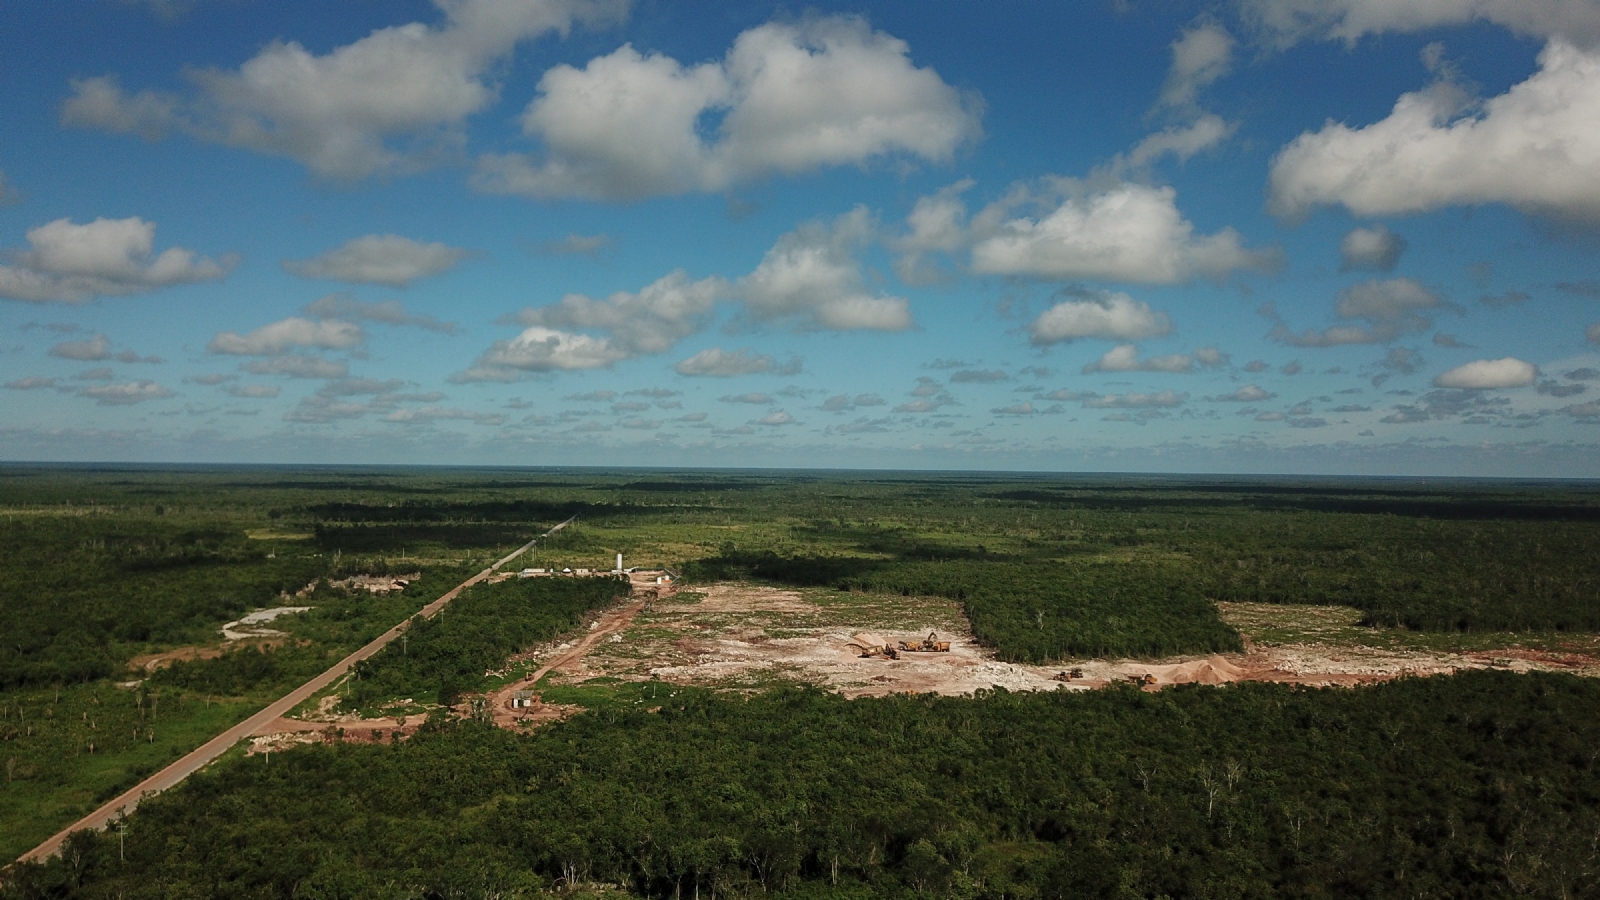 La Península de Yucatán está constituida de rocas calizas, que se afectan por el desarrollo urbano, dijo el especialista